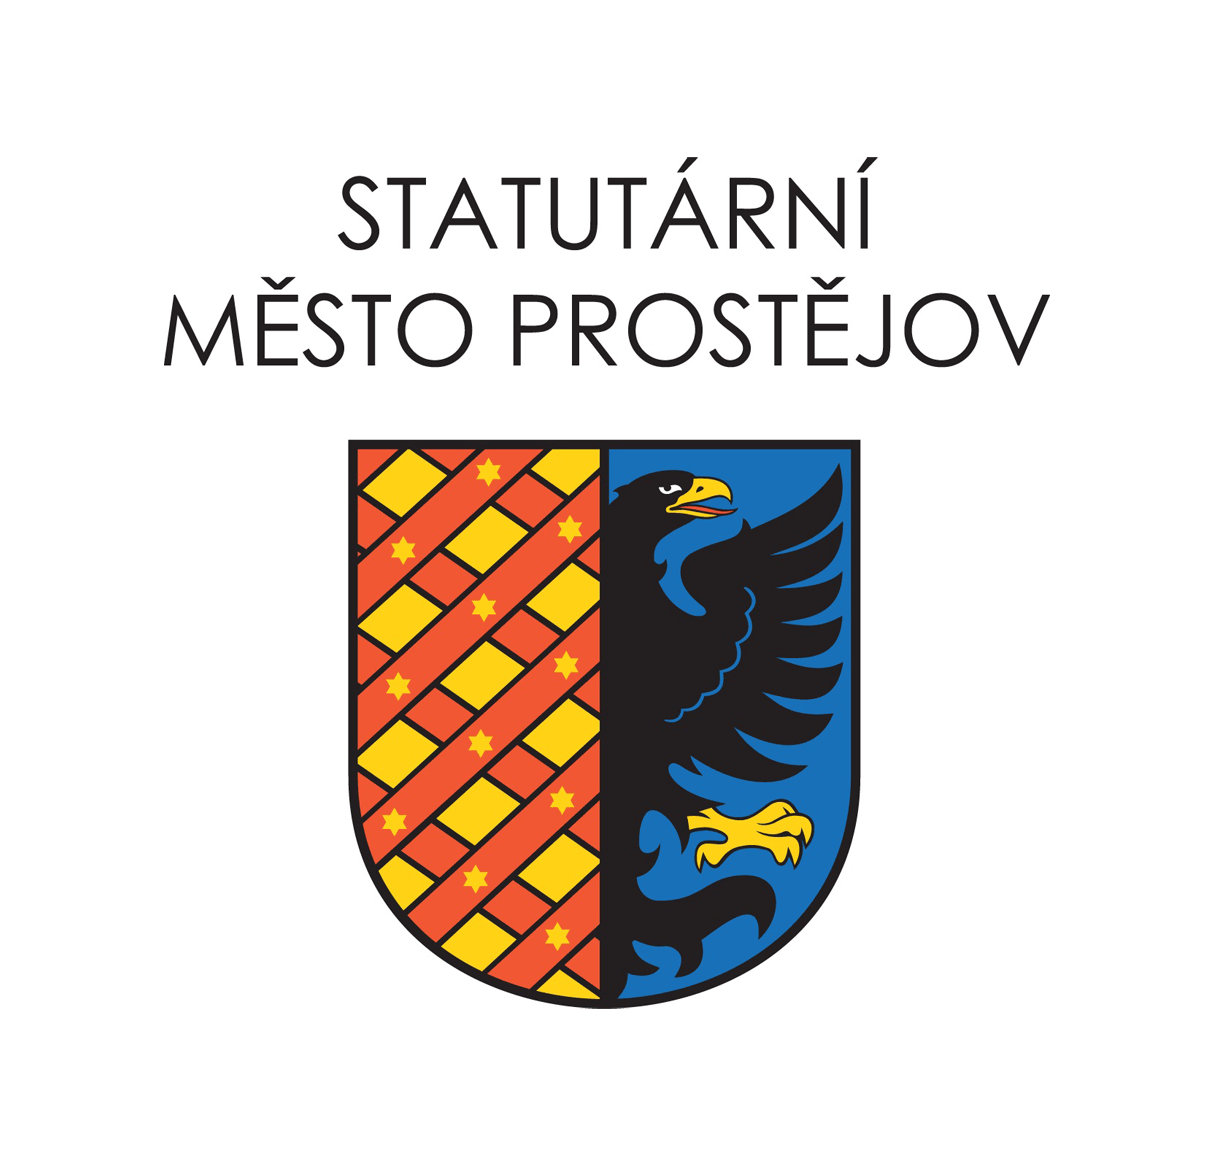 Statutární město Prostějov